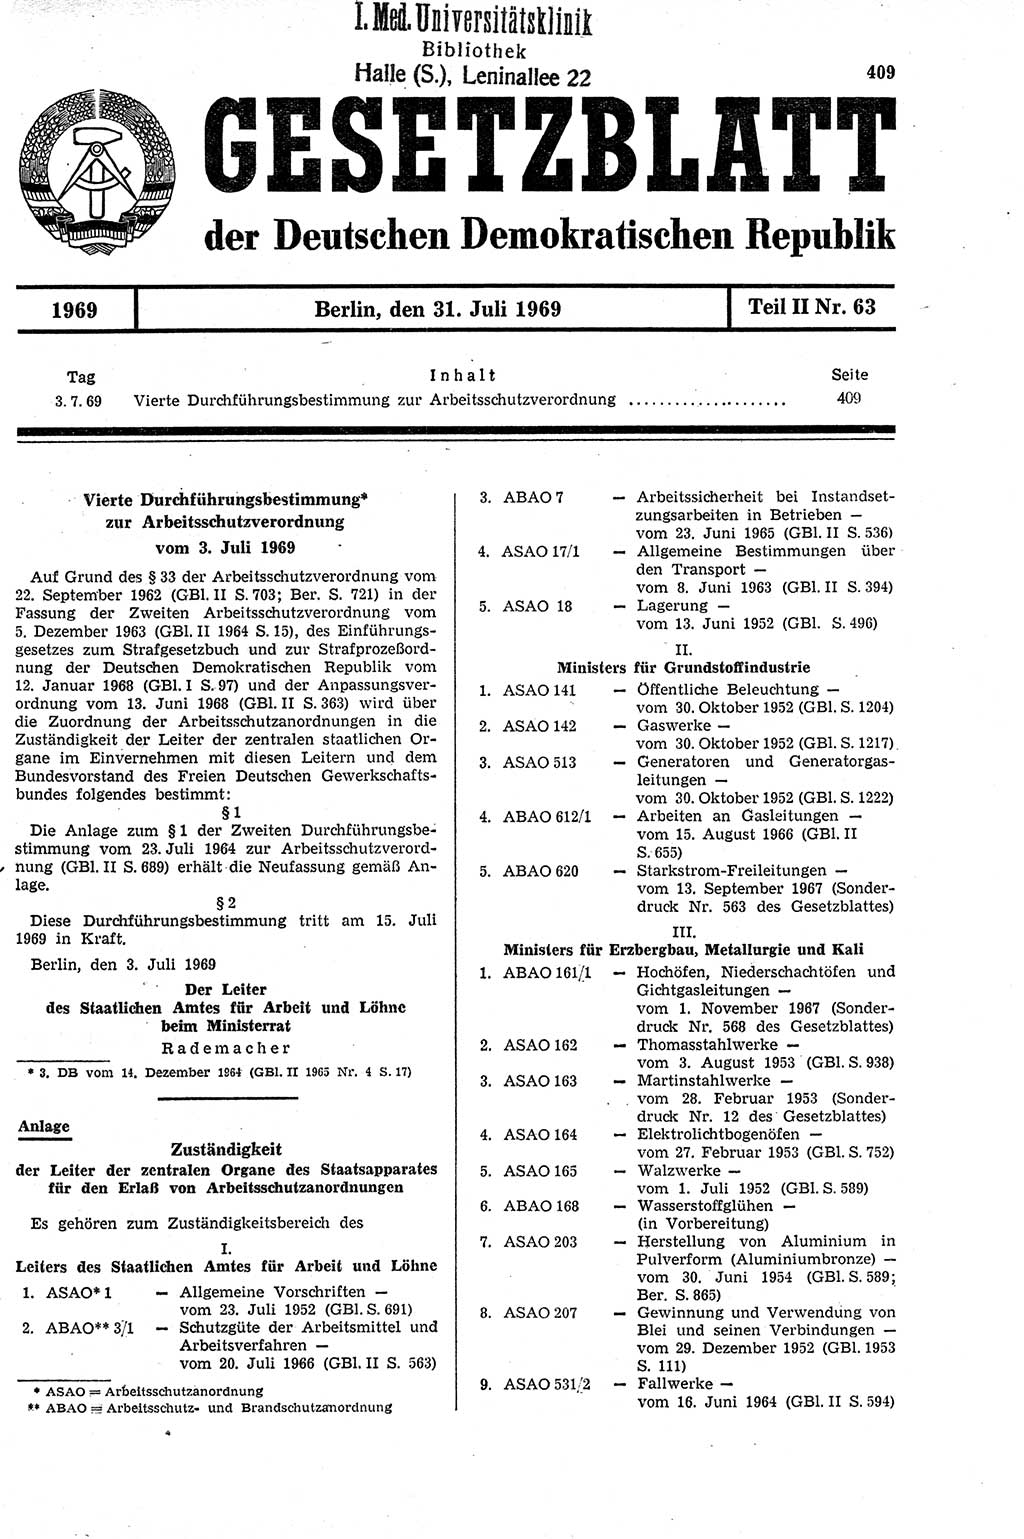 Gesetzblatt (GBl.) der Deutschen Demokratischen Republik (DDR) Teil ⅠⅠ 1969, Seite 409 (GBl. DDR ⅠⅠ 1969, S. 409)